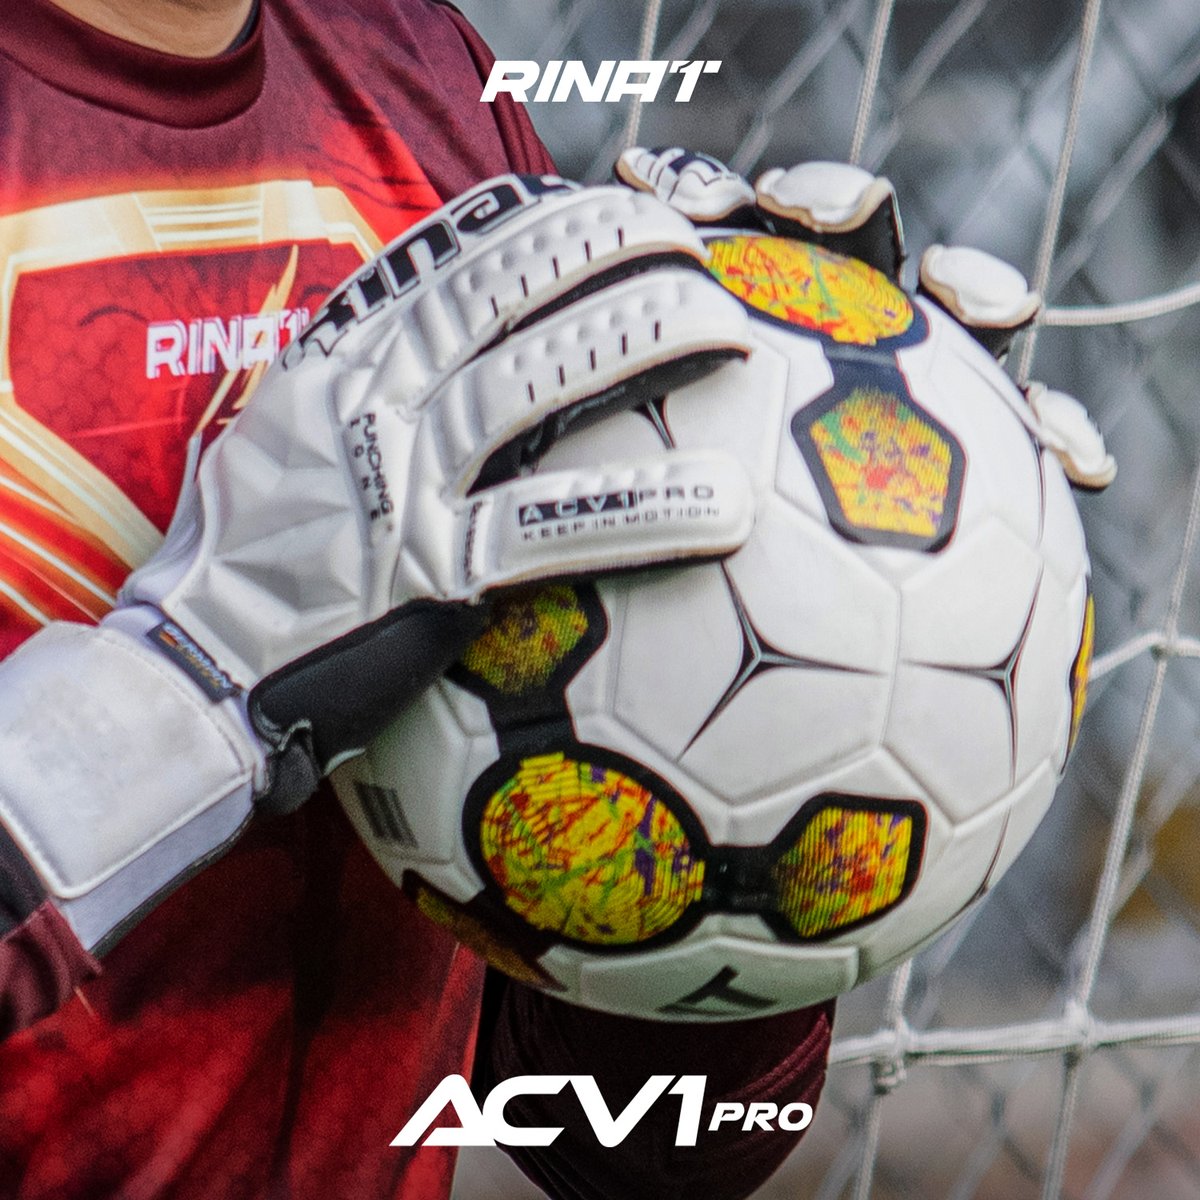 Tus guantes ACV1 PRO son capaces de convertir el miedo en determinación, y los disparos en oportunidades de grandeza. ¿Ya tienes los tuyos? 🧤🥅⚽😎 #guantesdeportero #guantesdeporteros #guantesdeporteroboss #porterosdefutbol #porterosdefutbol #arquerosdefutbol #futbol